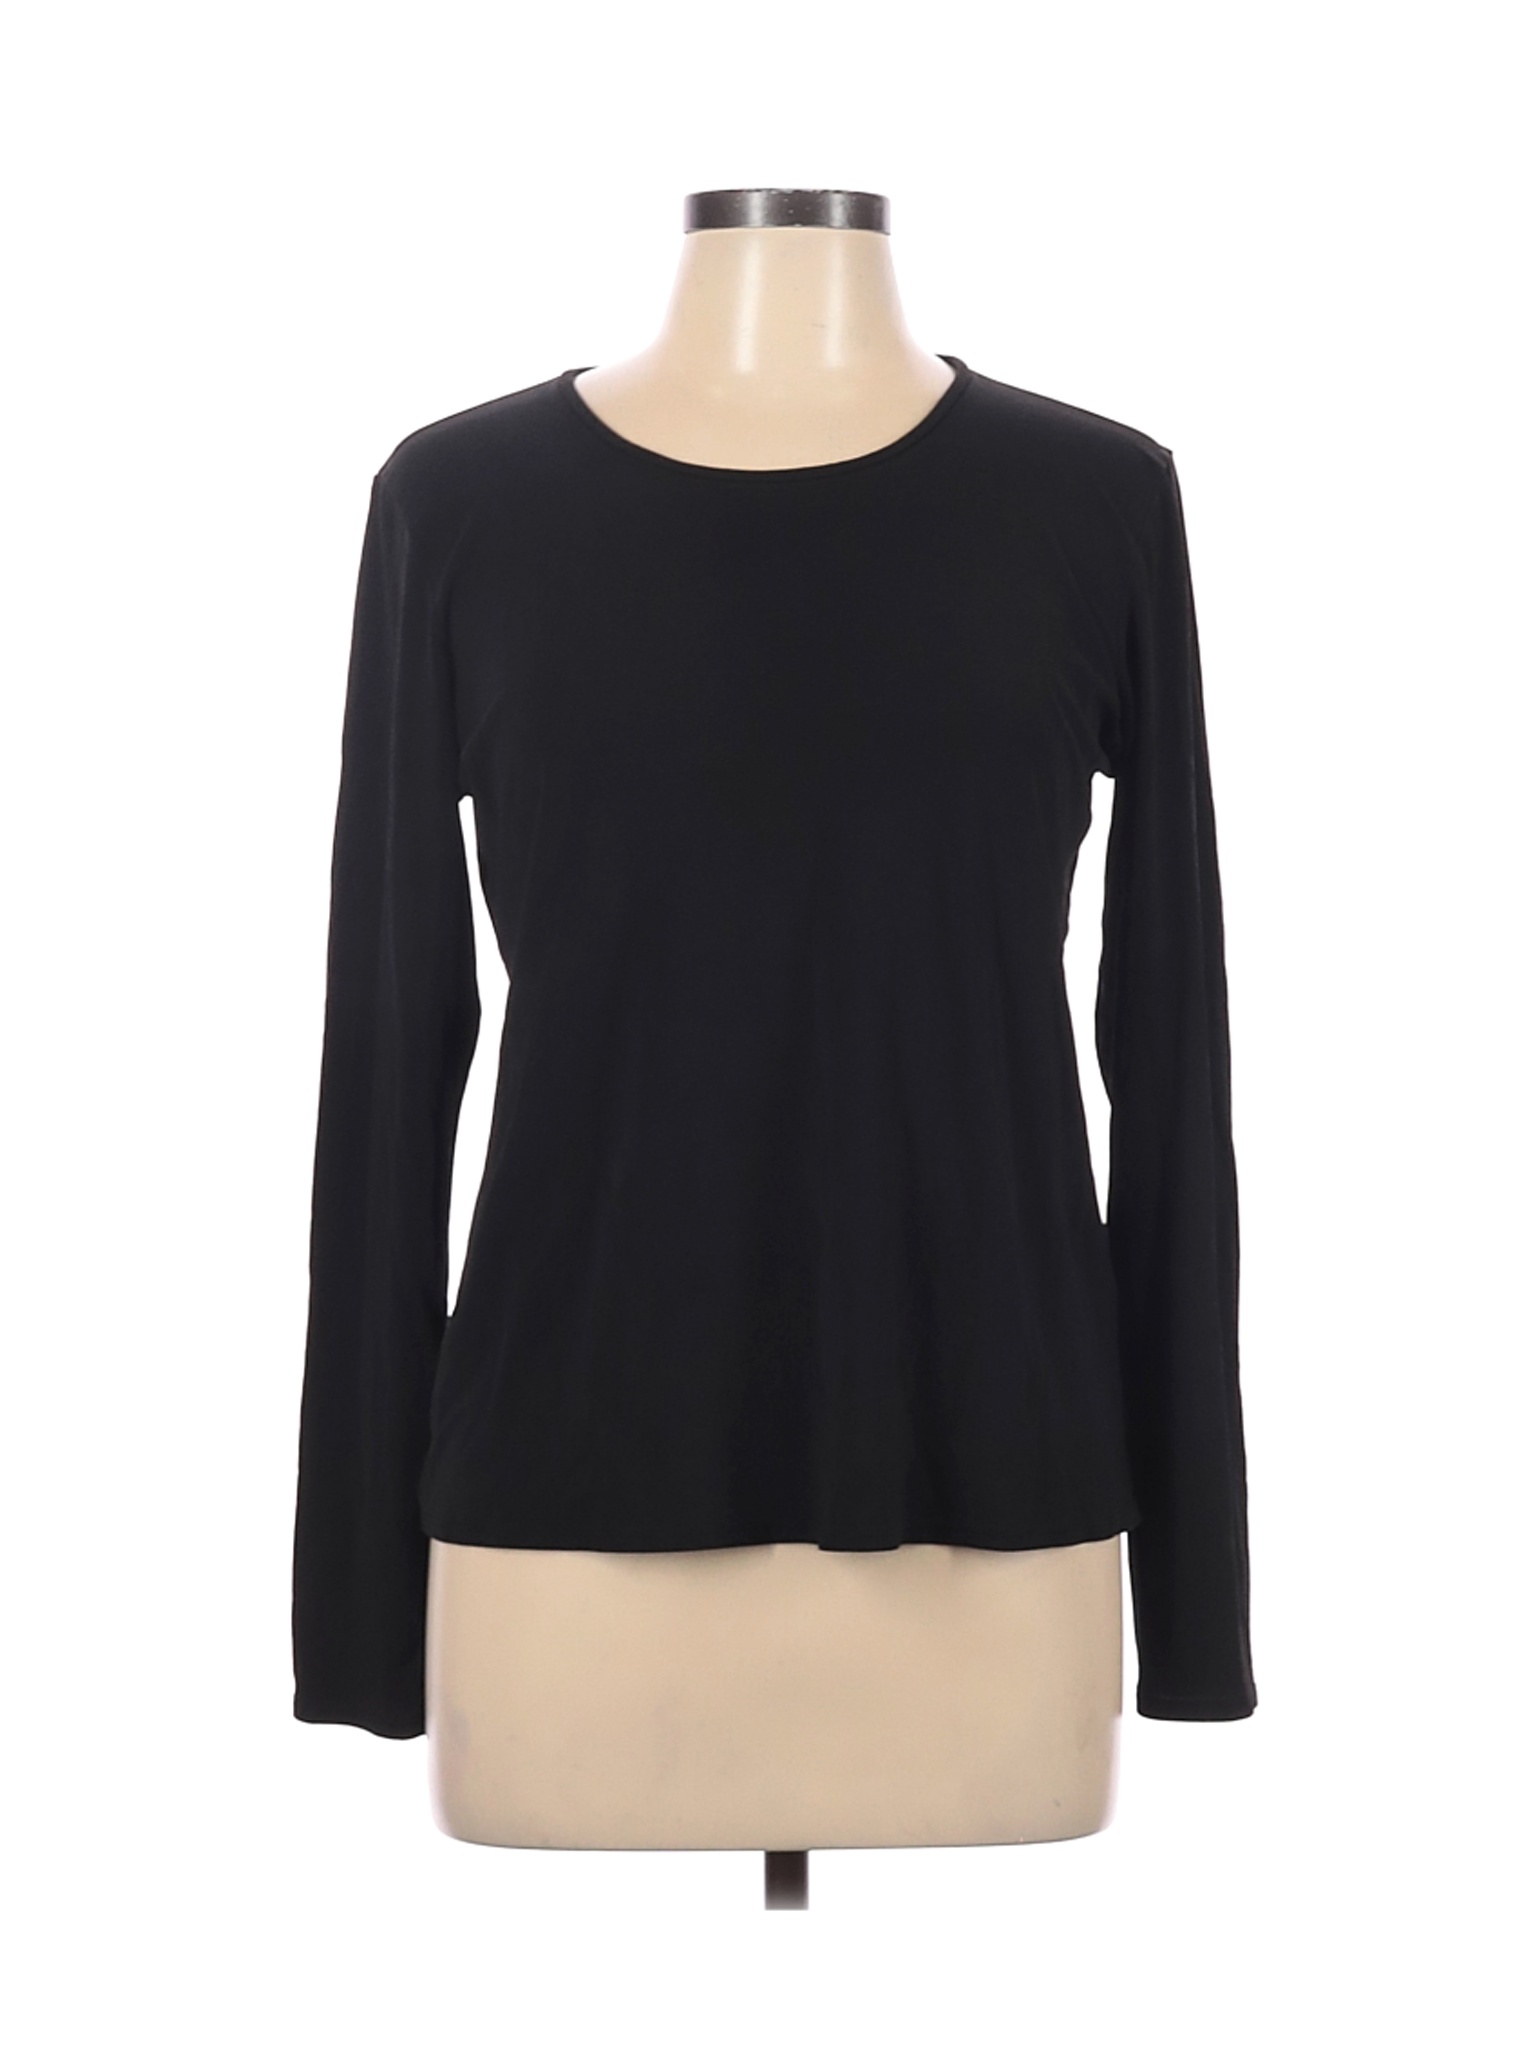 Eileen Fisher Women Black Long Sleeve Silk Top L | eBay